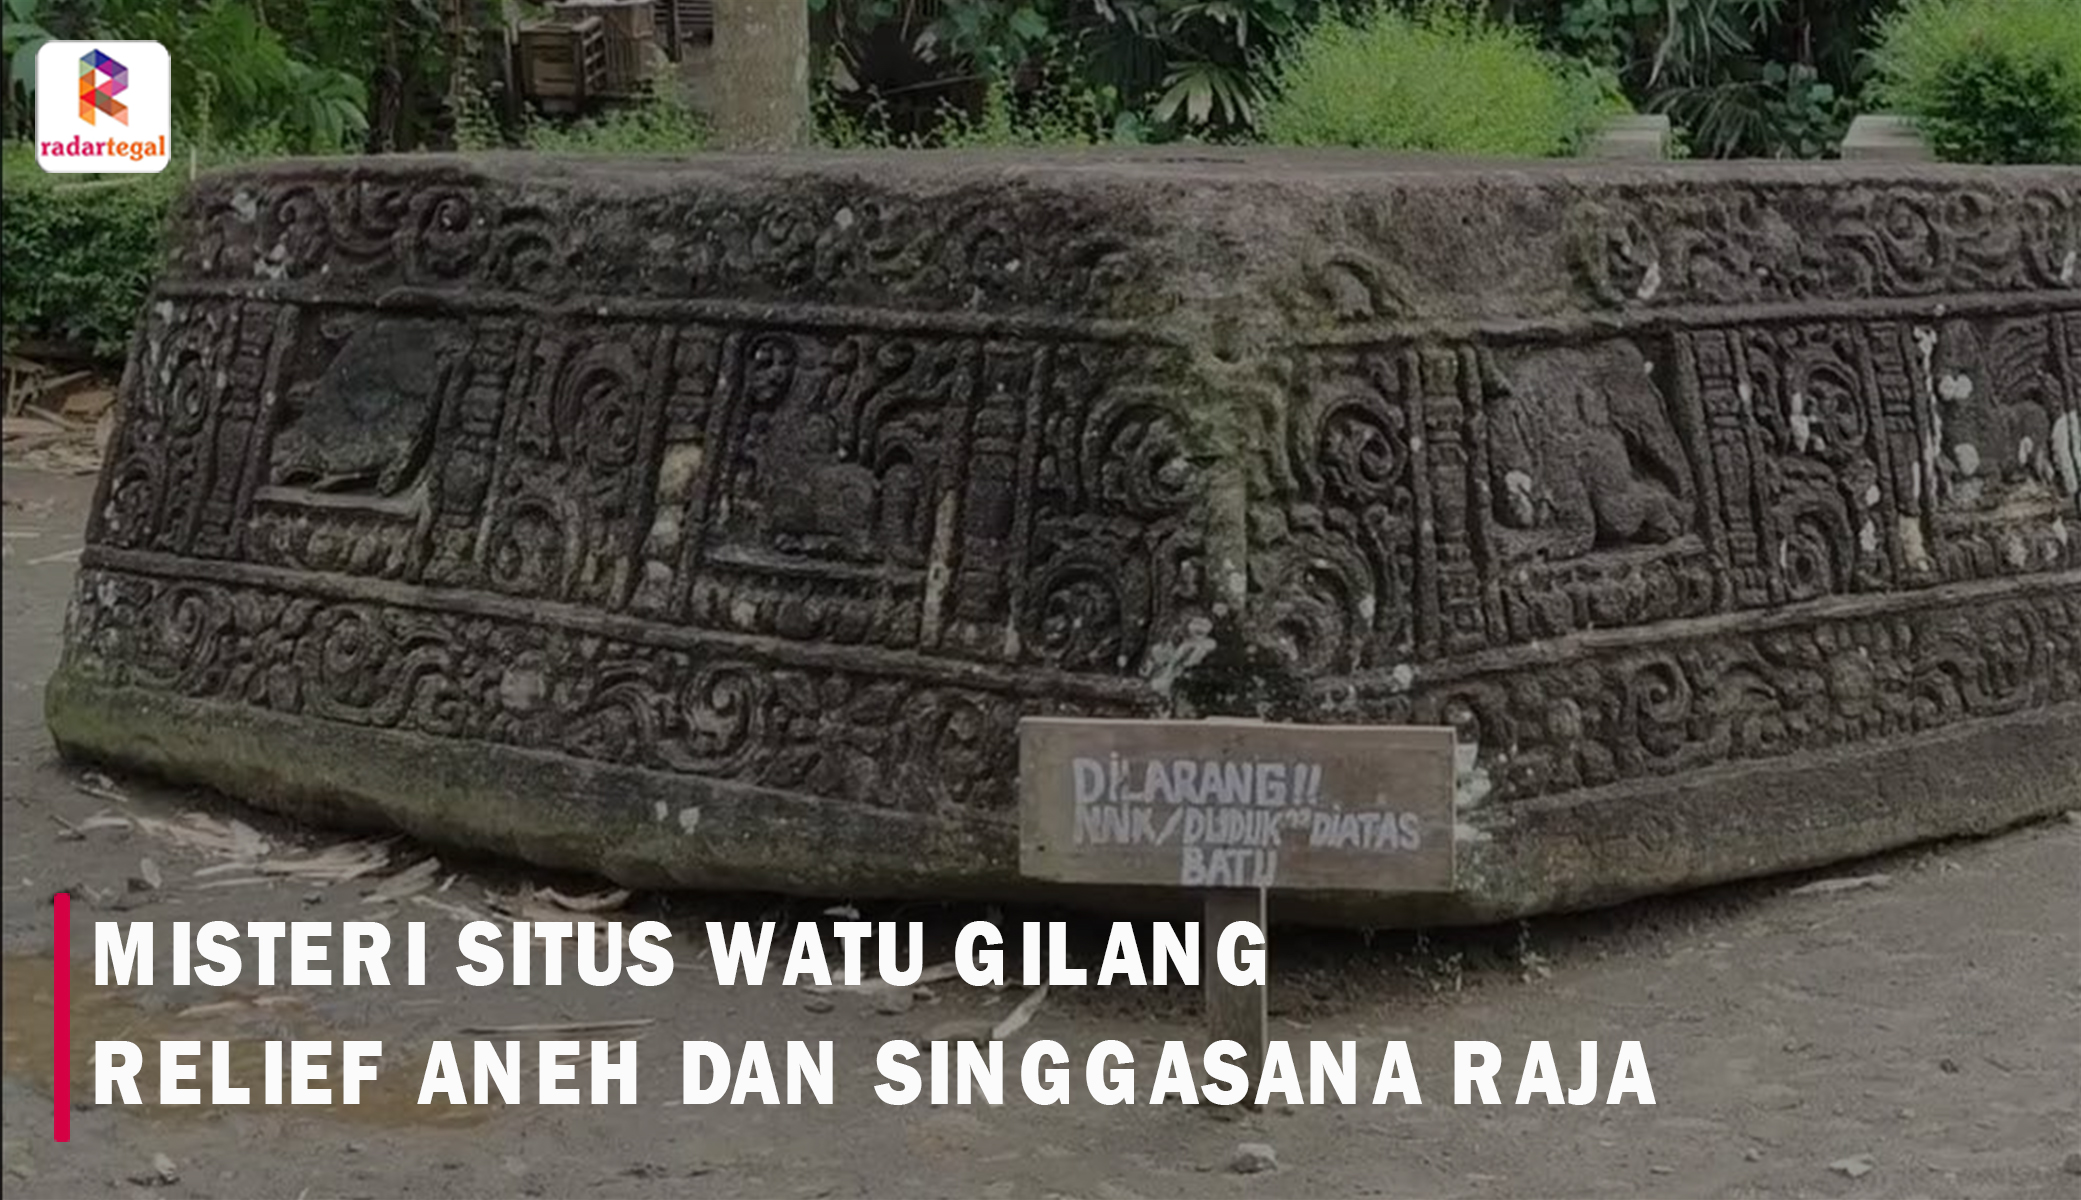  Menelusuri Jejak Sejarah dan Mitos Situs Watu Gilang, Mengungkap Relief Misterius hingga Kendaraan Terbang